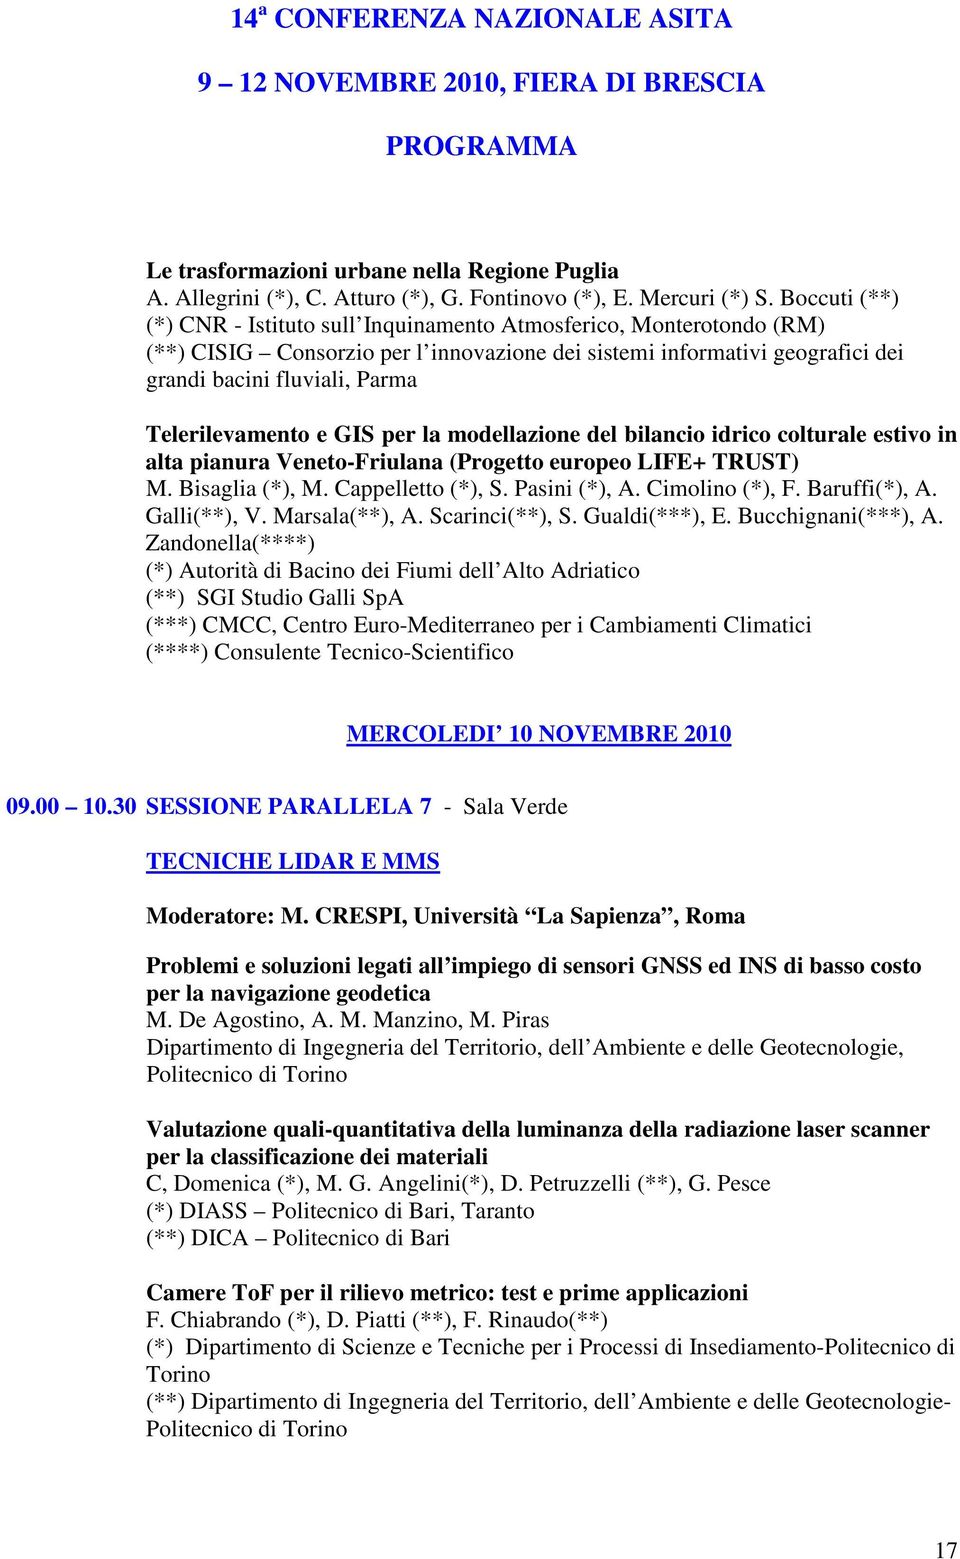 Telerilevamento e GIS per la modellazione del bilancio idrico colturale estivo in alta pianura Veneto-Friulana (Progetto europeo LIFE+ TRUST) M. Bisaglia (*), M. Cappelletto (*), S. Pasini (*), A.